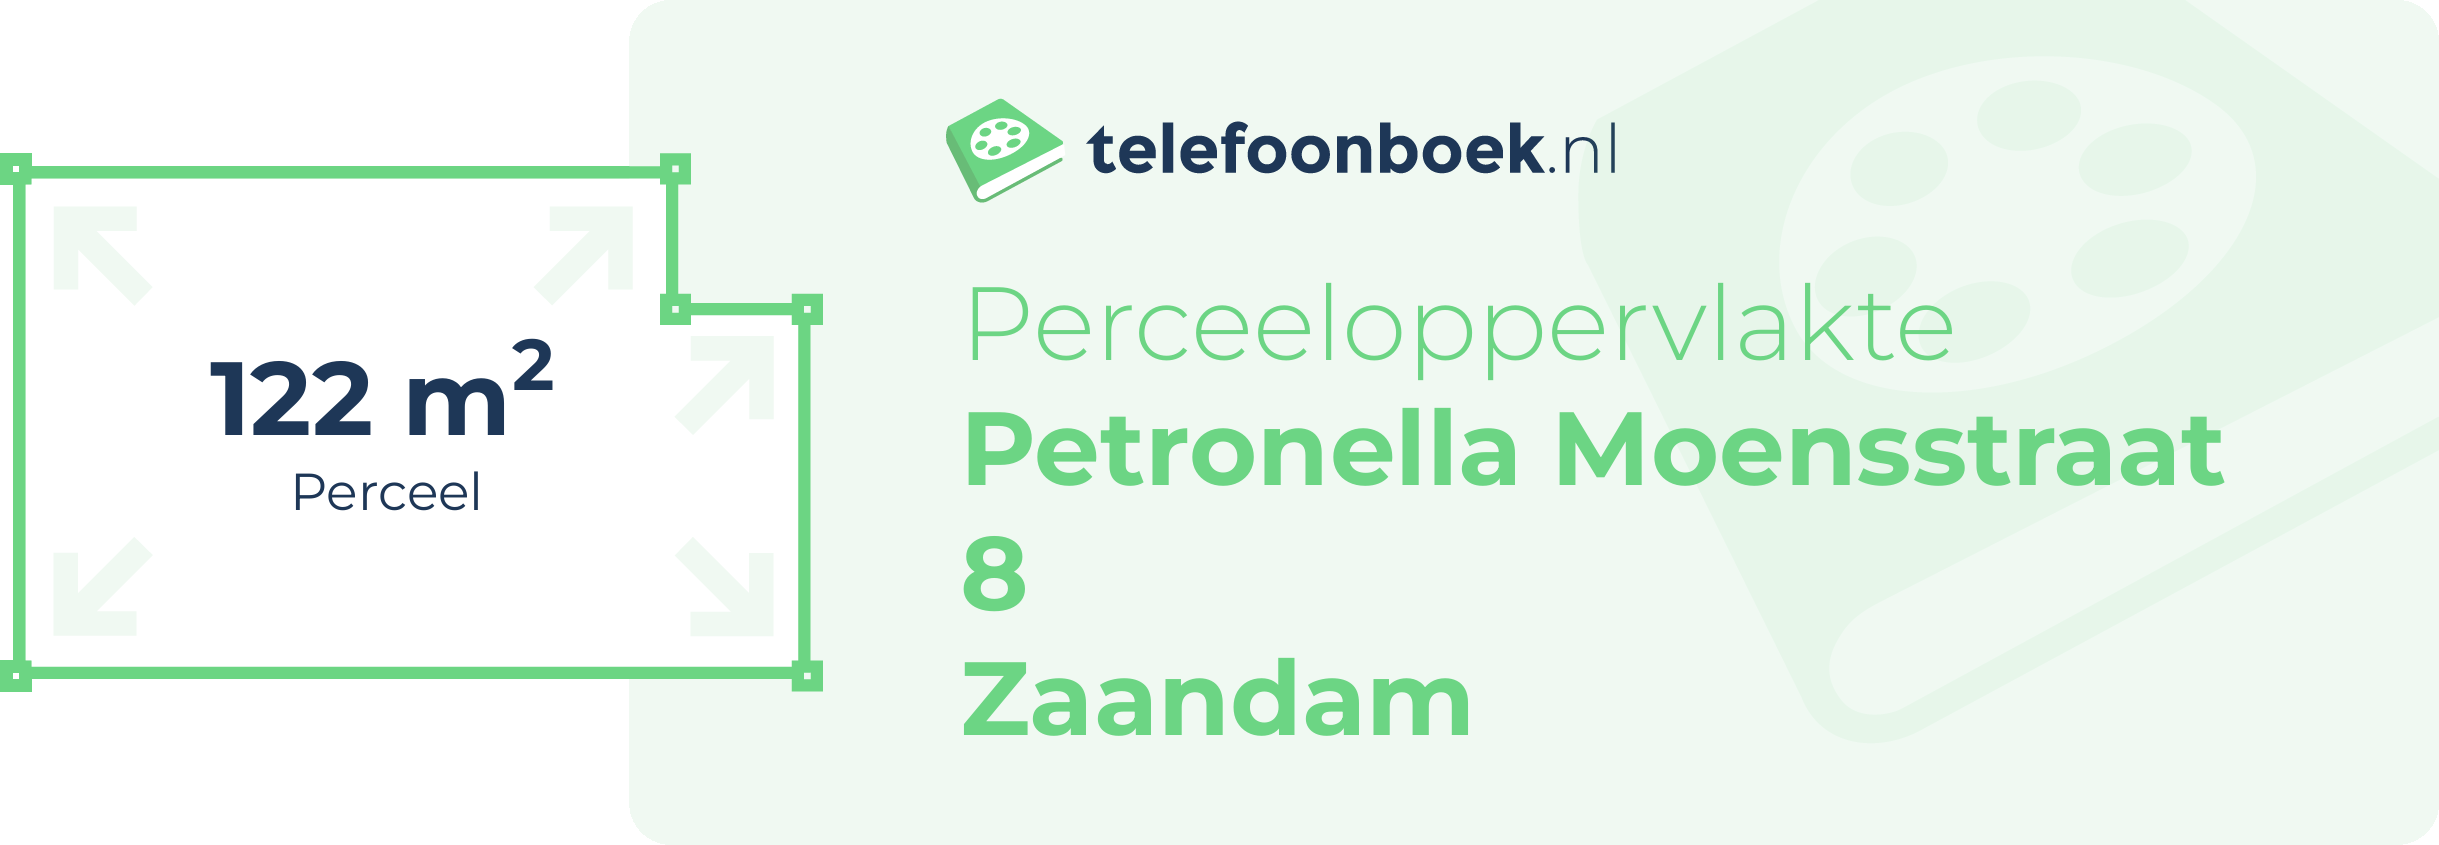 Perceeloppervlakte Petronella Moensstraat 8 Zaandam